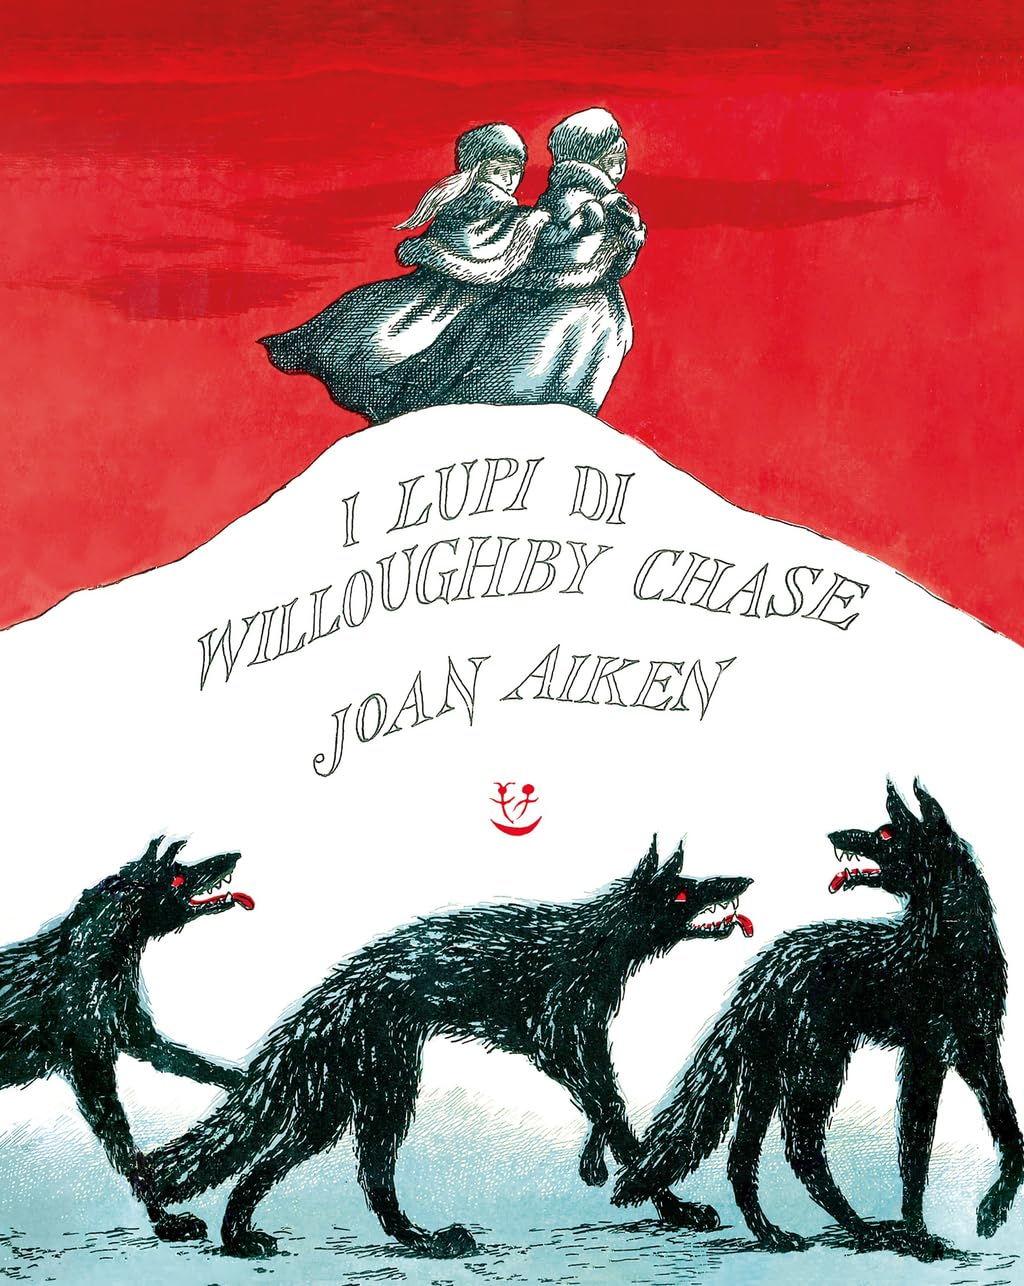 I Lupi Di Willoughby Chase di Joan Aiken – Recensione